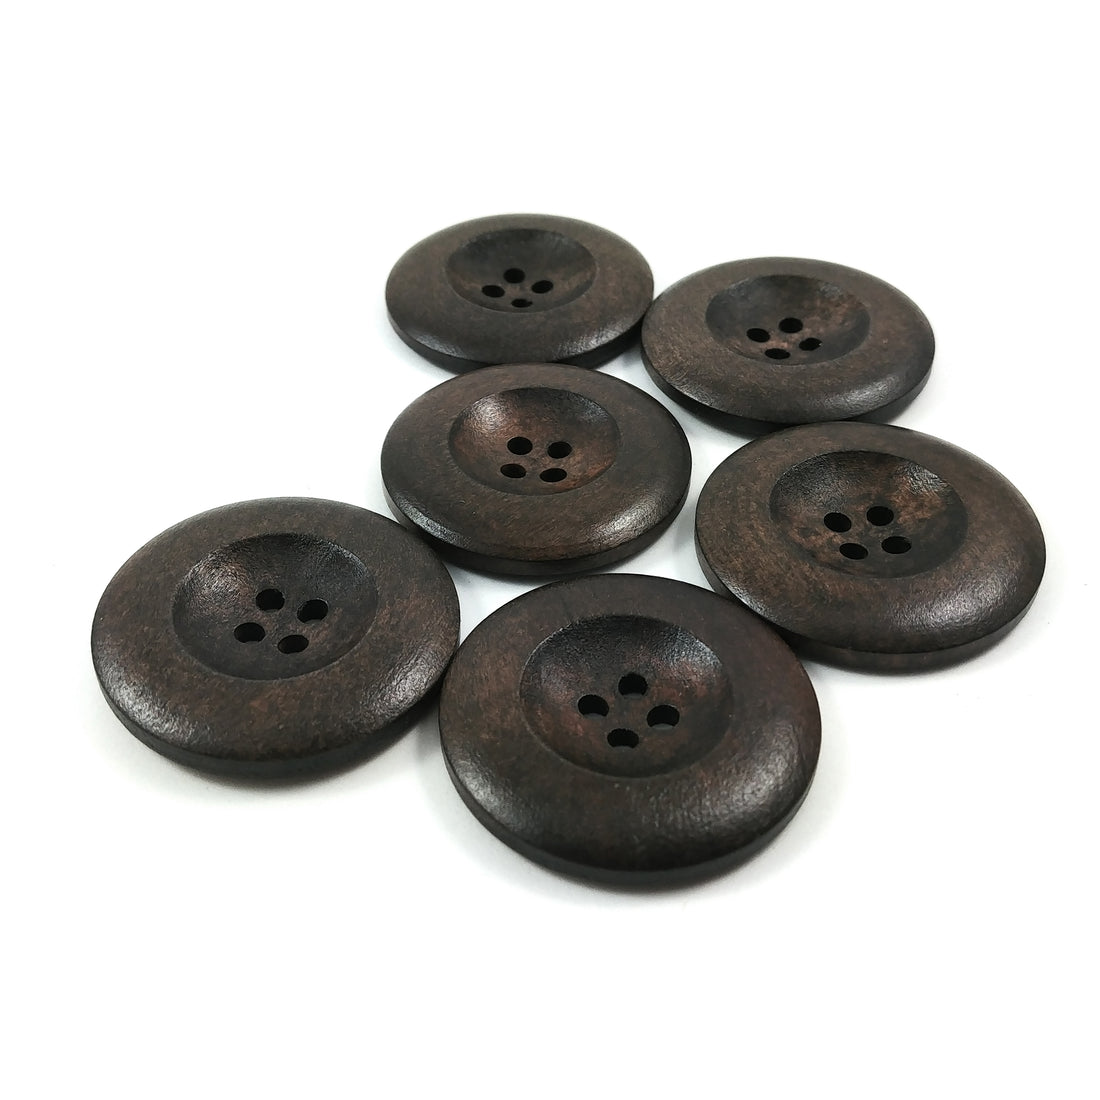 Bouton de bois brun chocolat foncé de 3.5cm - ensemble de 6 boutons en bois naturel